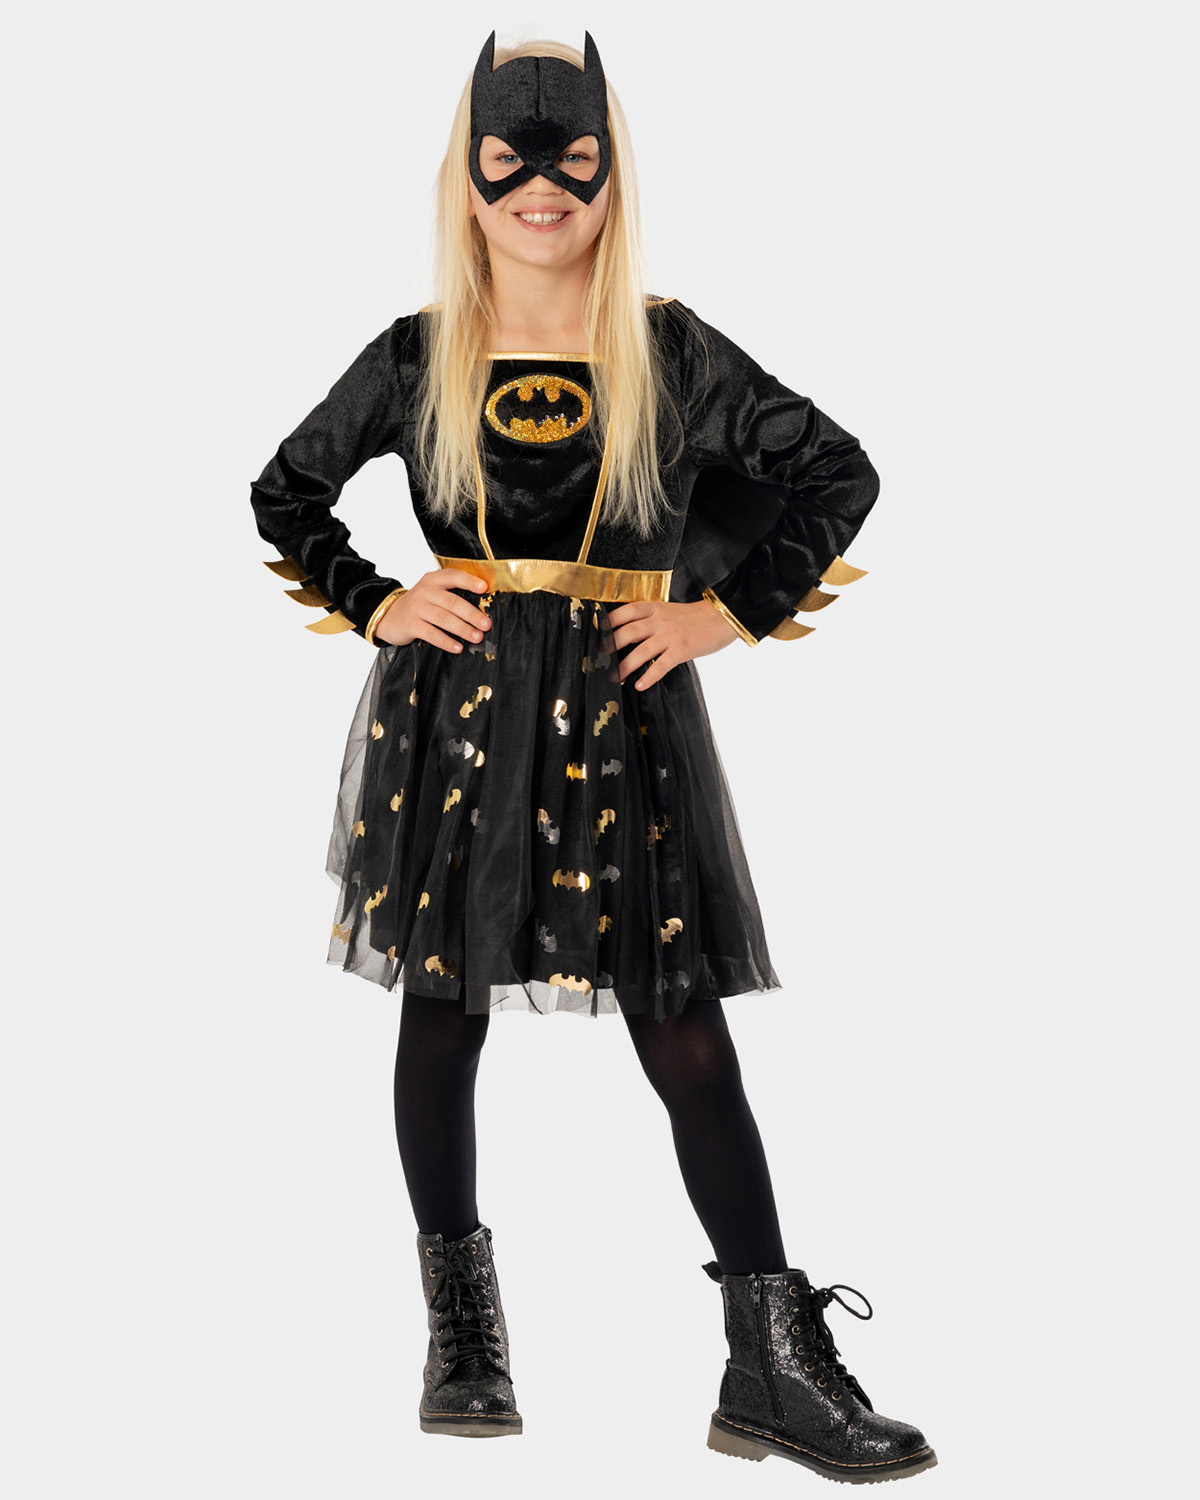 Batgirl Halloween Costume For $15 In Glenside, PA